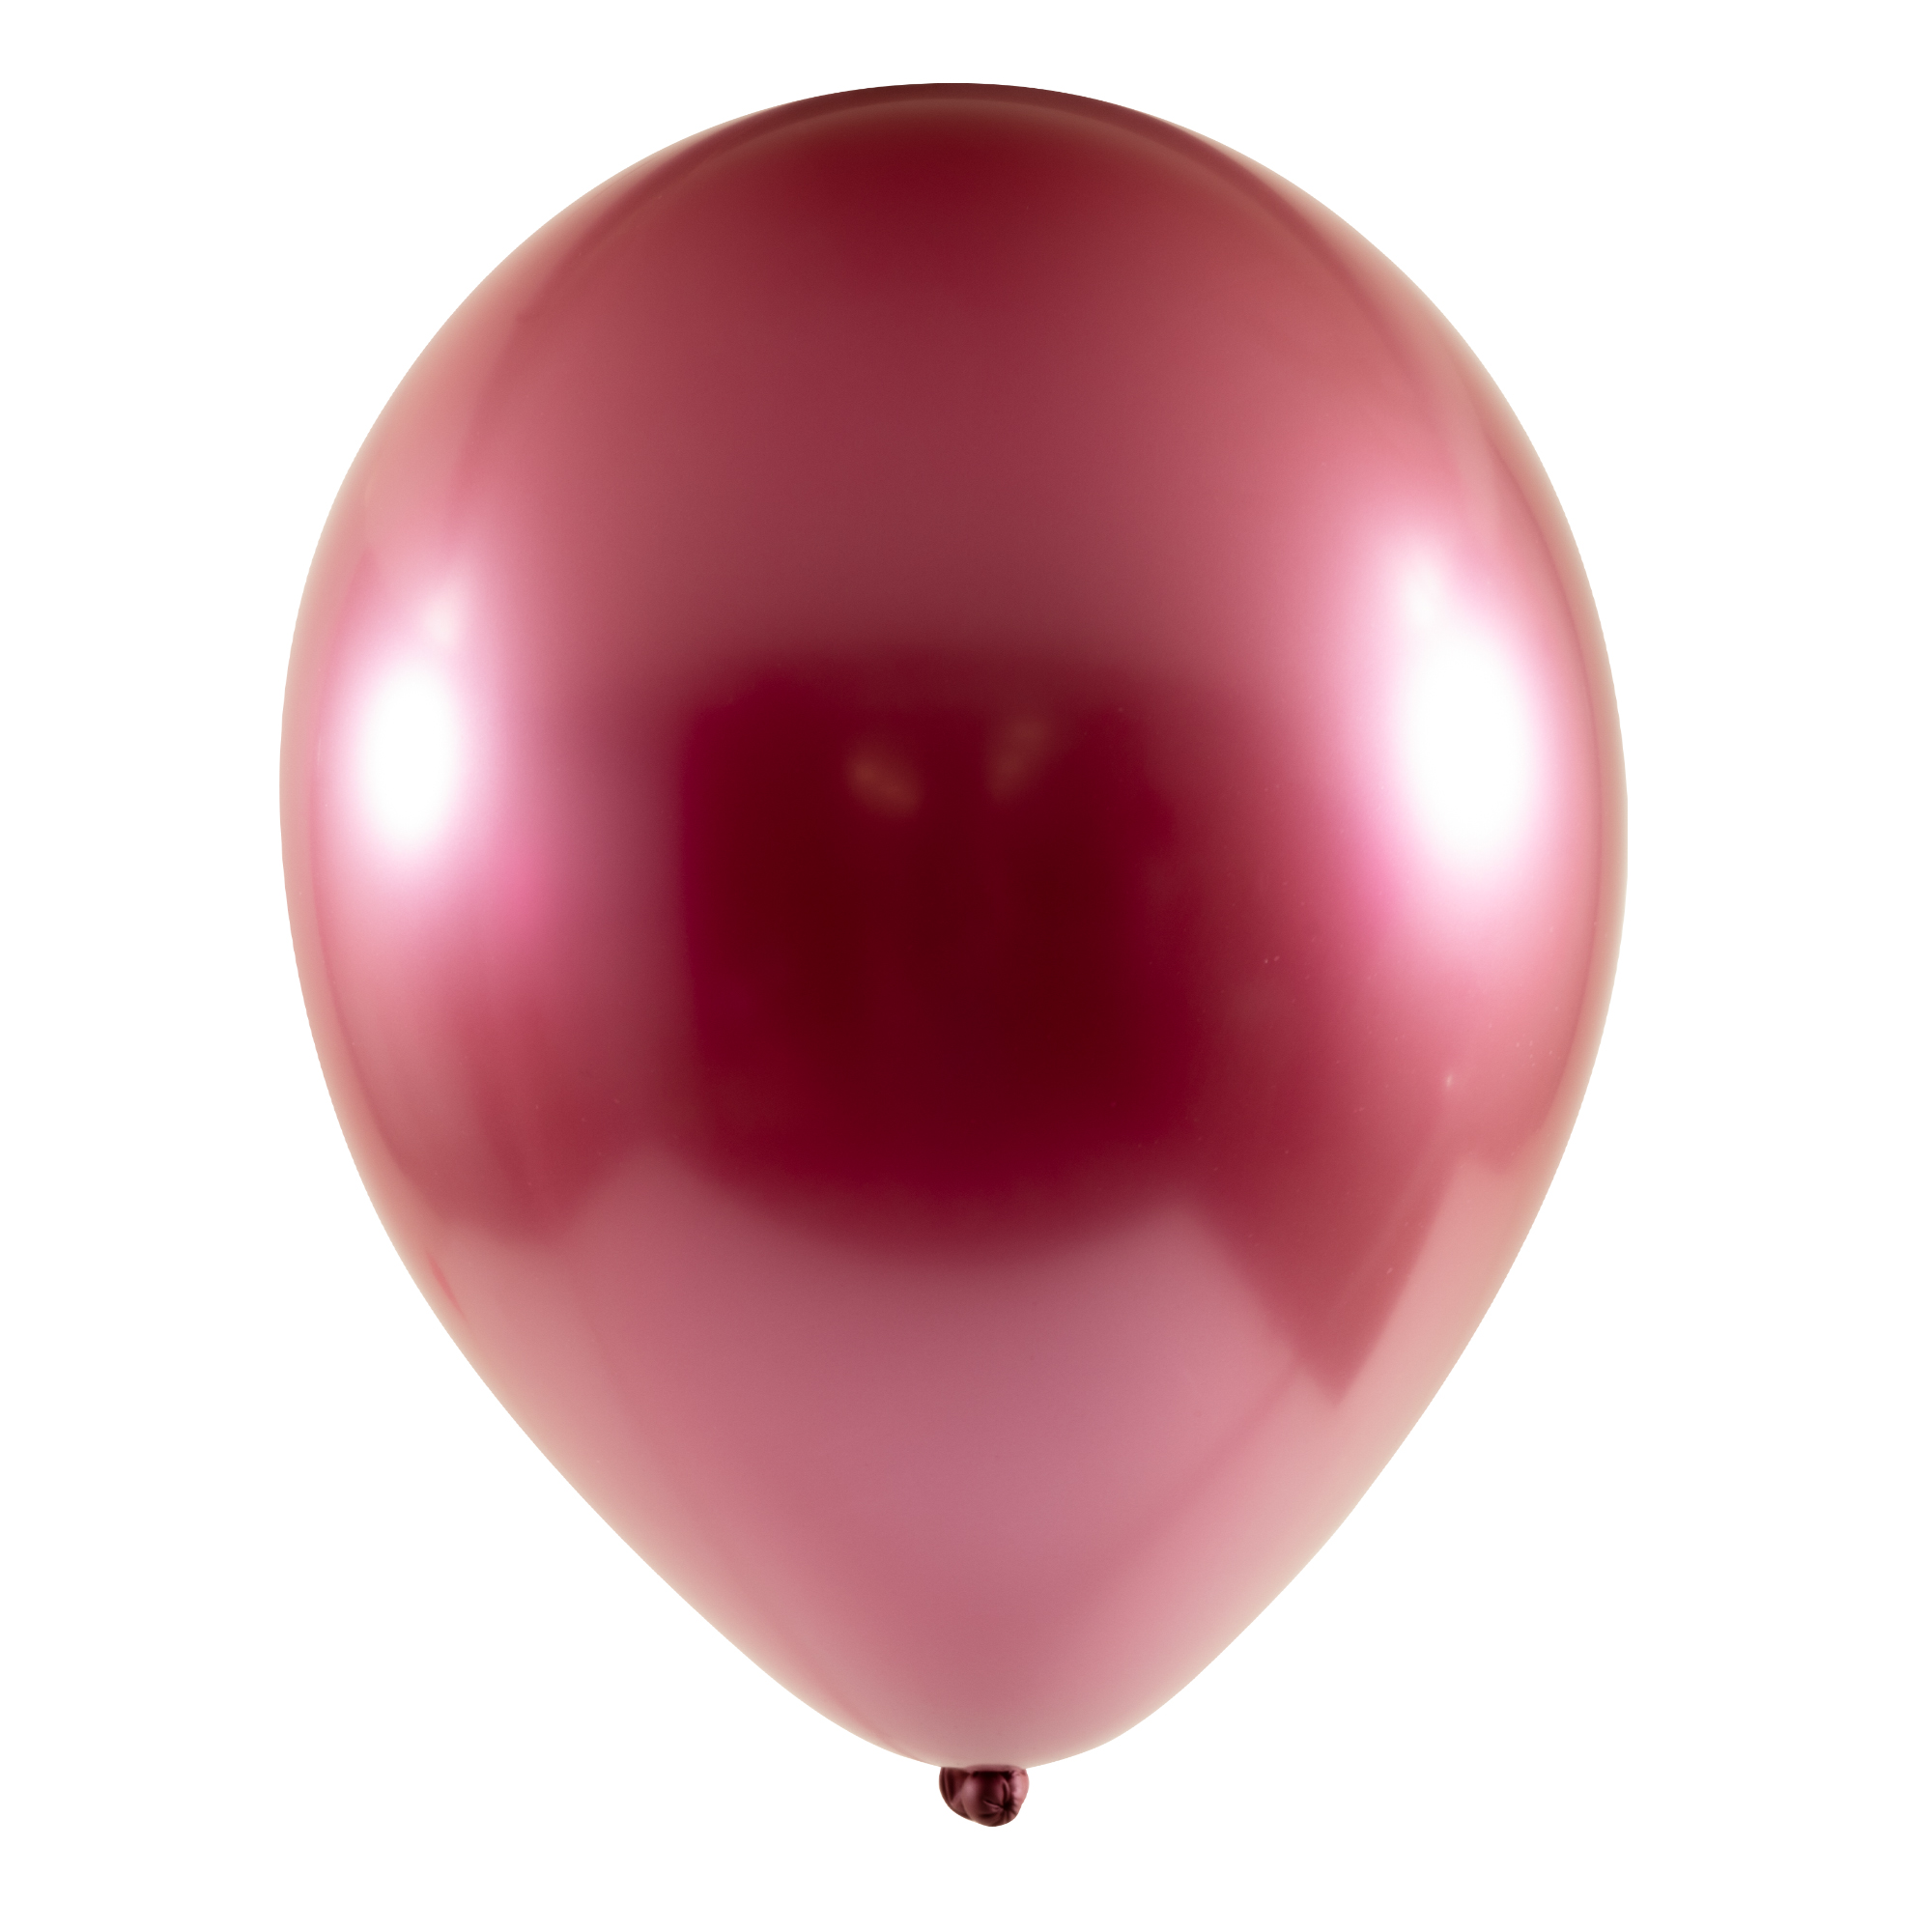 Chrome Latex Balloon 18" 10pc/bag - Red